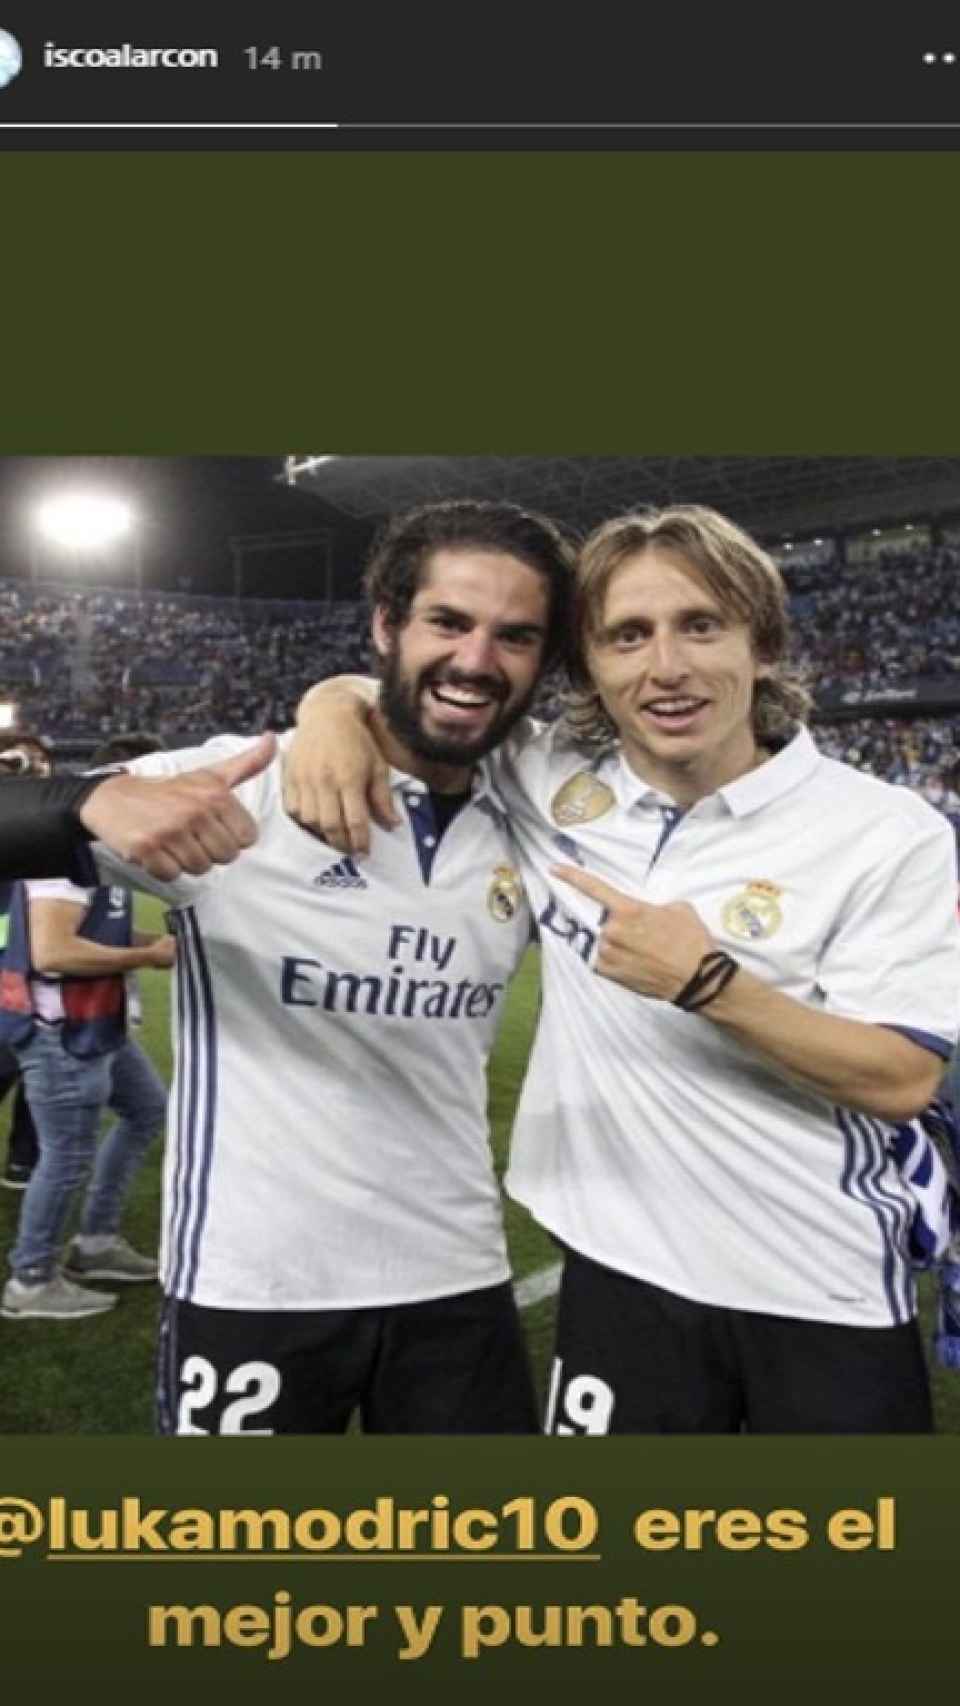 Isco felicita a Modric por ganar el premio The Best a mejor jugador